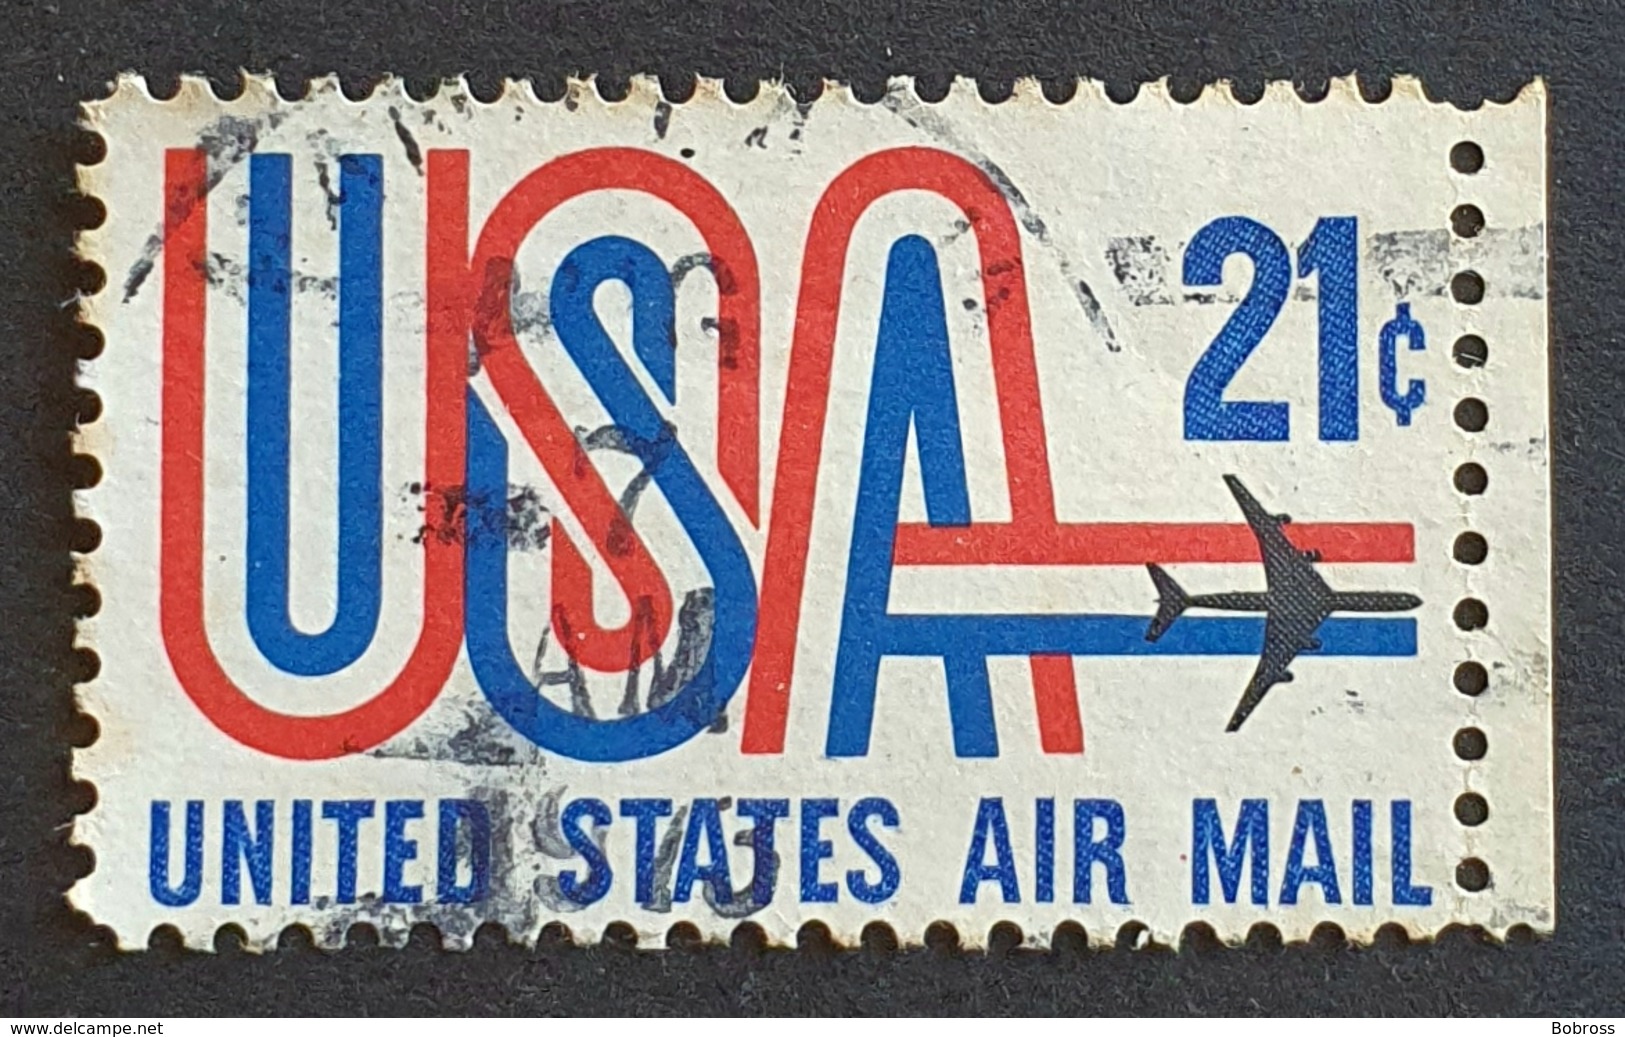 Airmail, #C81 21c, USA And Jet, United States Of America, USA, Used - 2b. 1941-1960 Ongebruikt